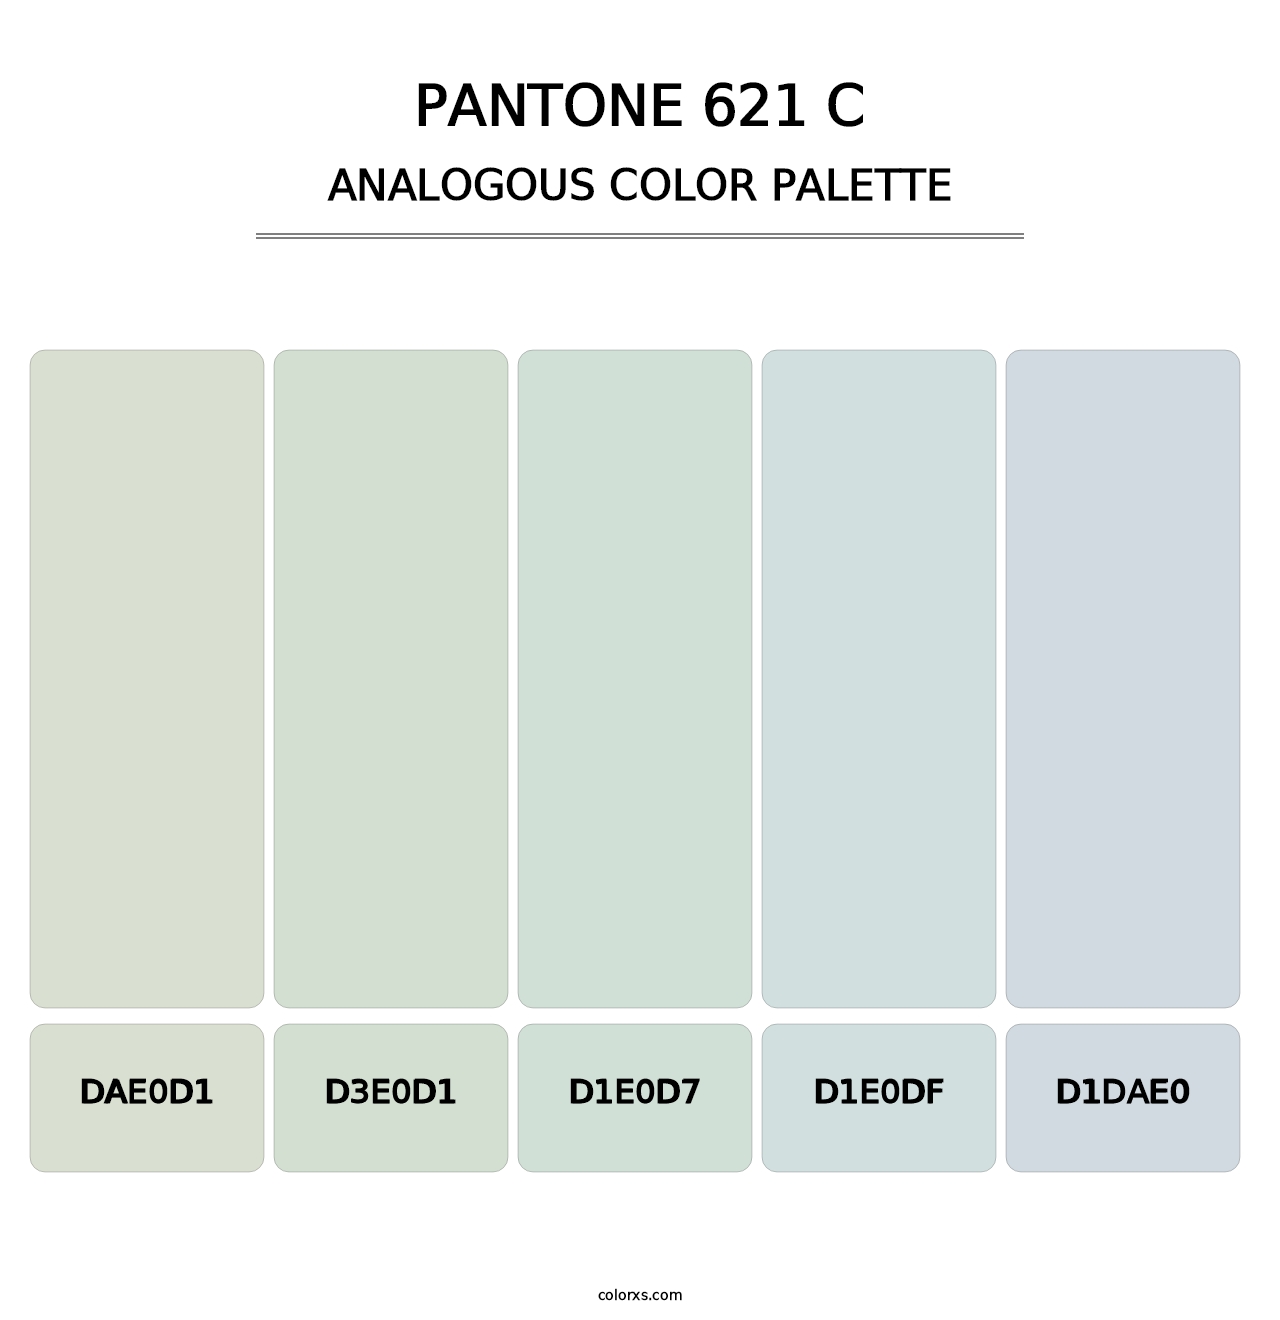 PANTONE 621 C - Analogous Color Palette